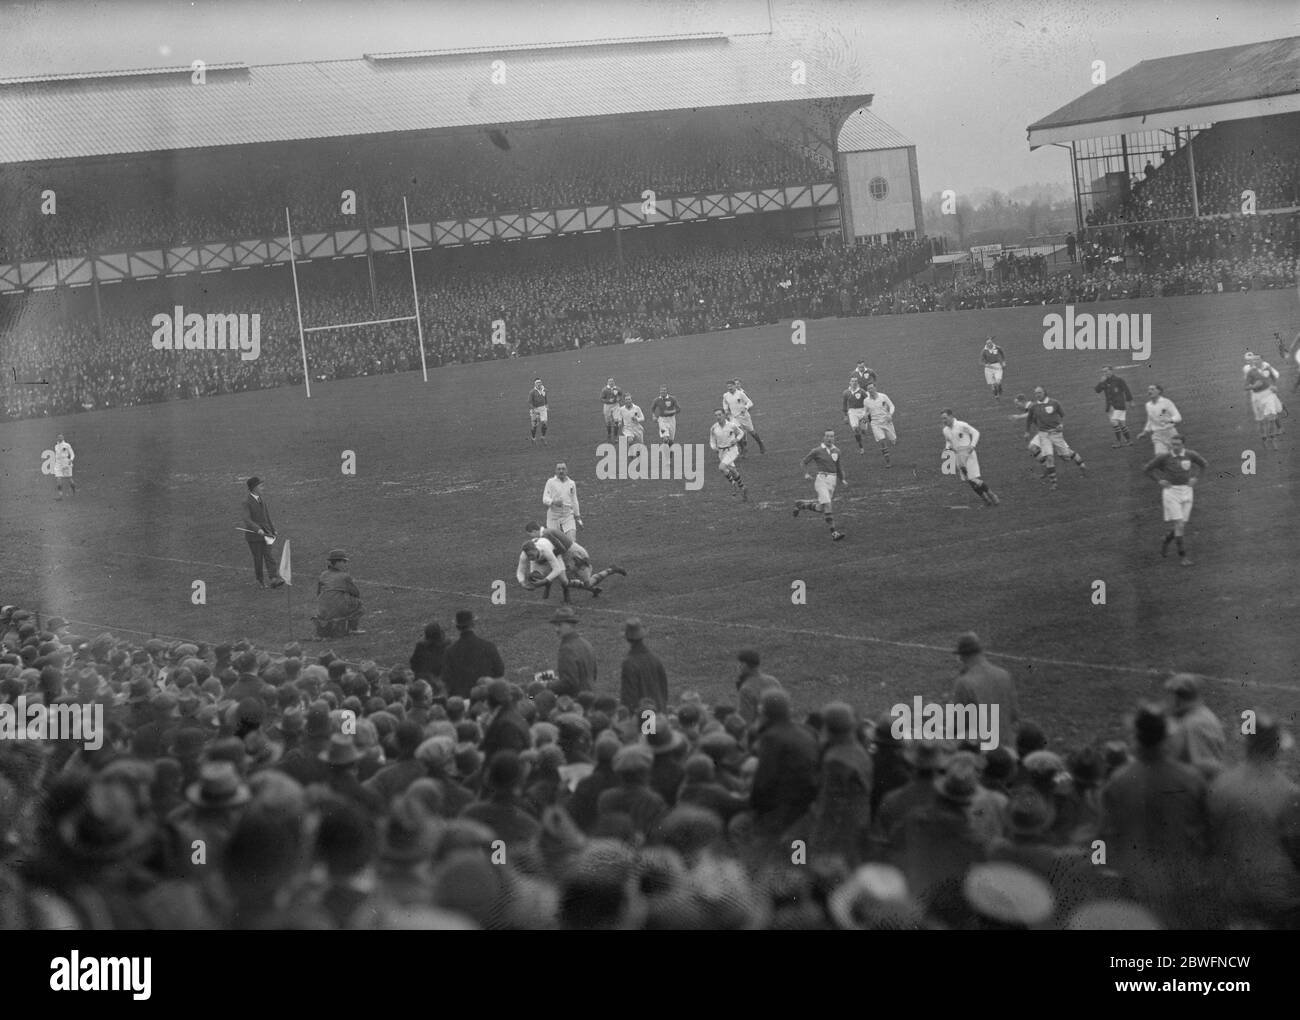 Rugby international à Twickenham . Angleterre contre Irlande . Vue générale du jeu avec l'Angleterre étant attaqué sur la ligne . 14 février 1925 Banque D'Images